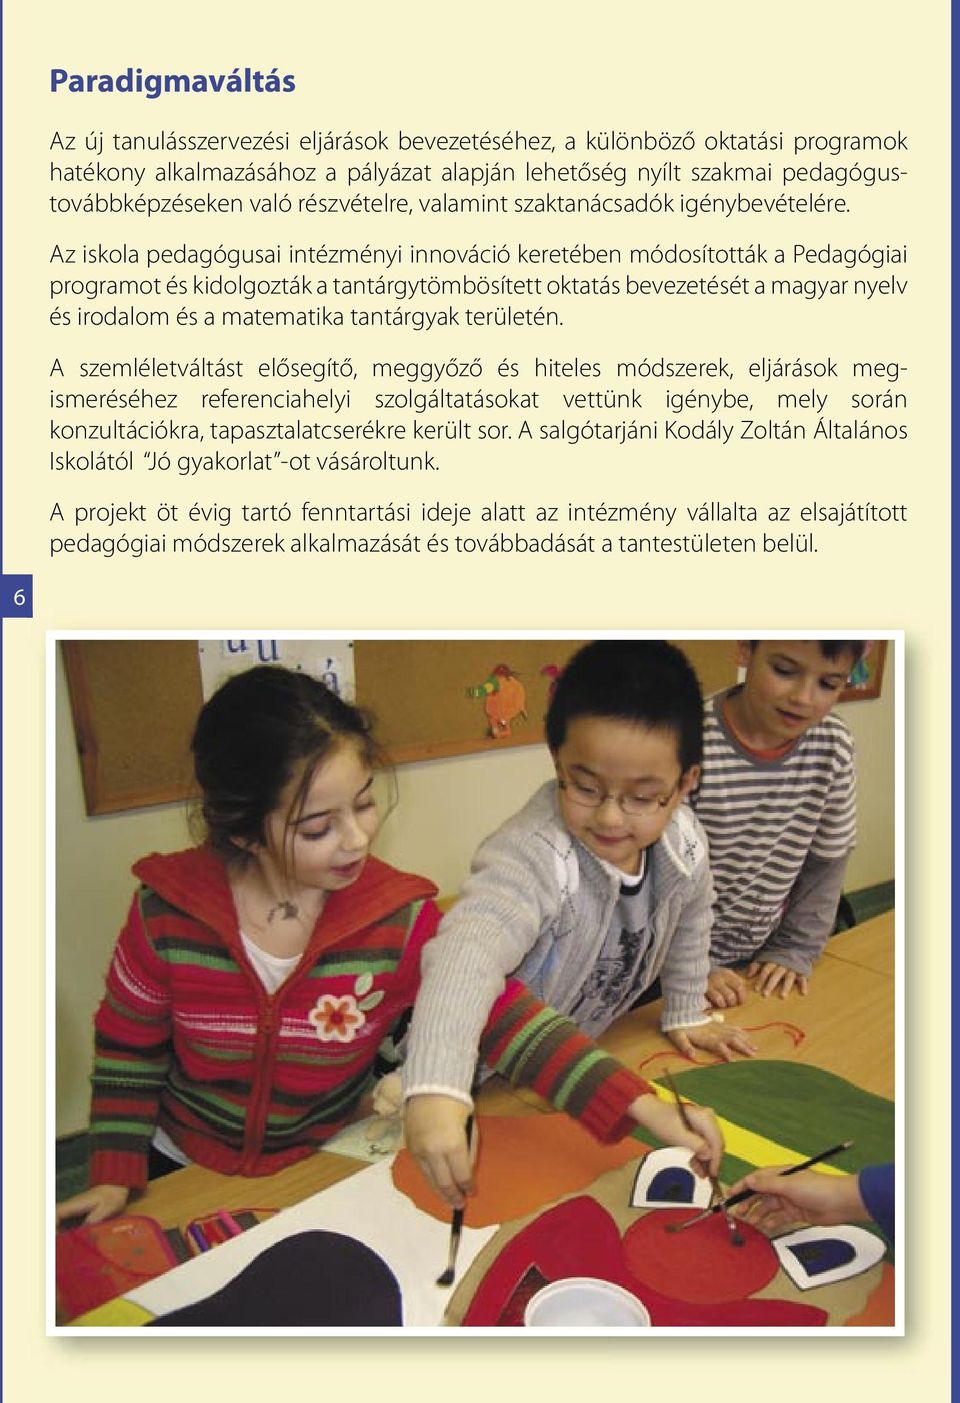 Az iskola pedagógusai intézményi innováció keretében módosították a Pedagógiai programot és kidolgozták a tantárgytömbösített oktatás bevezetését a magyar nyelv és irodalom és a matematika tantárgyak